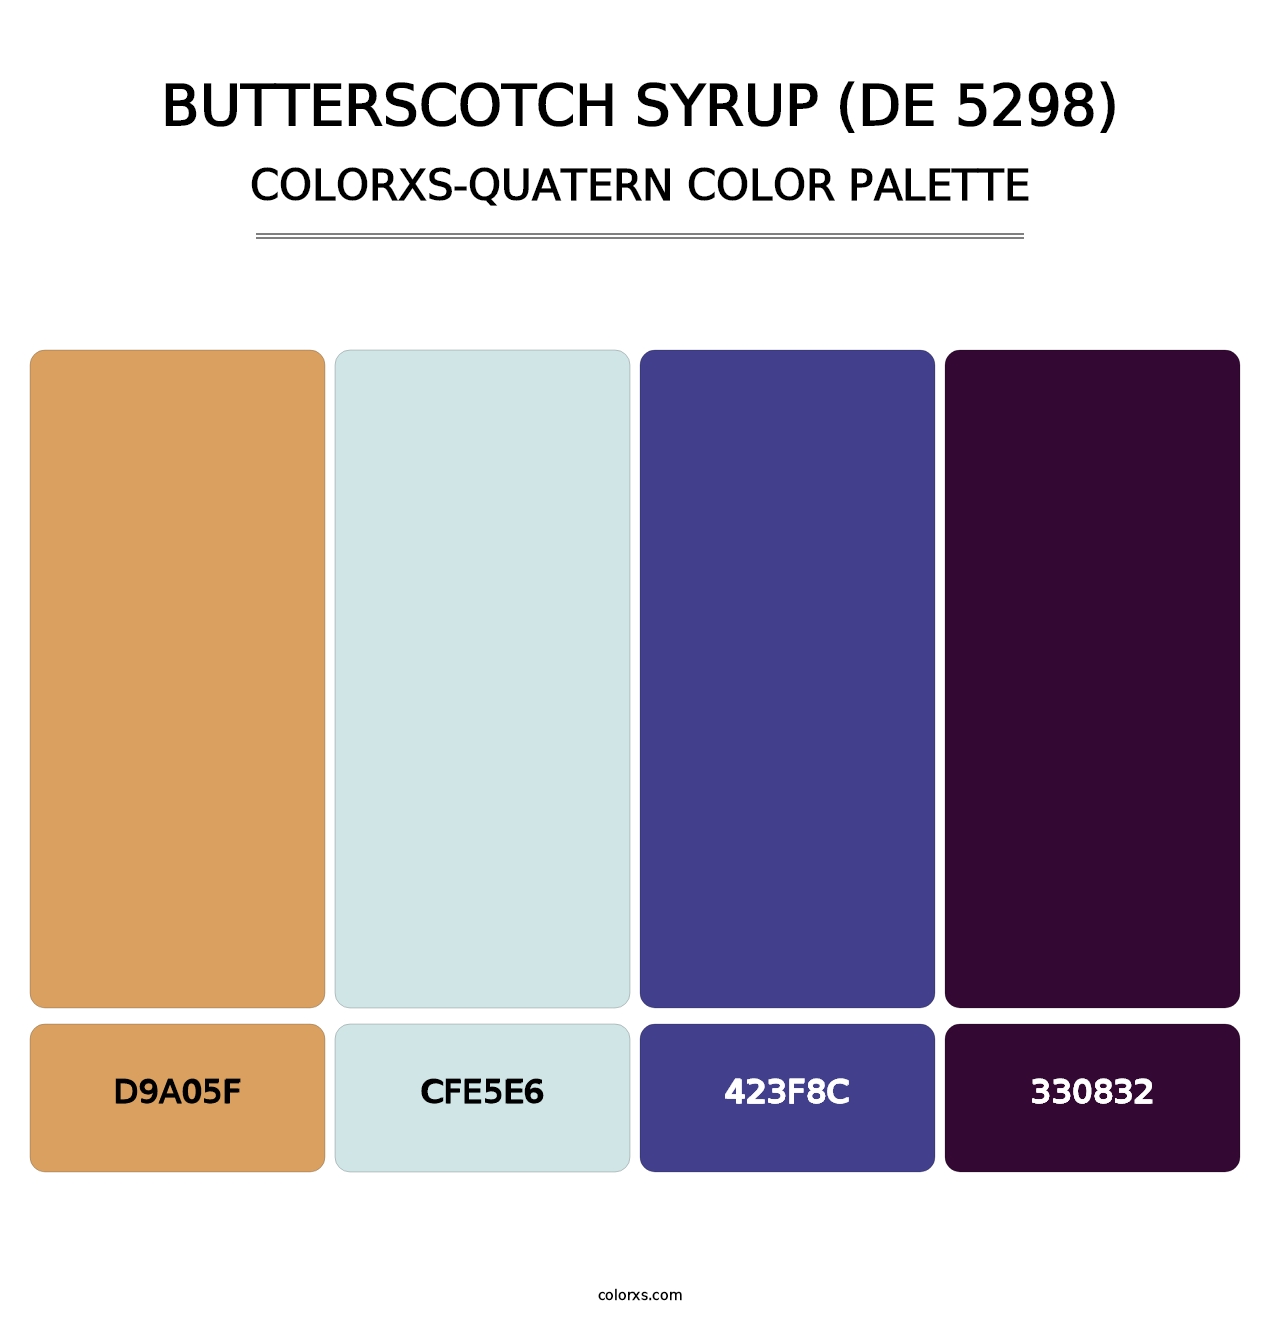 Butterscotch Syrup (DE 5298) - Colorxs Quatern Palette